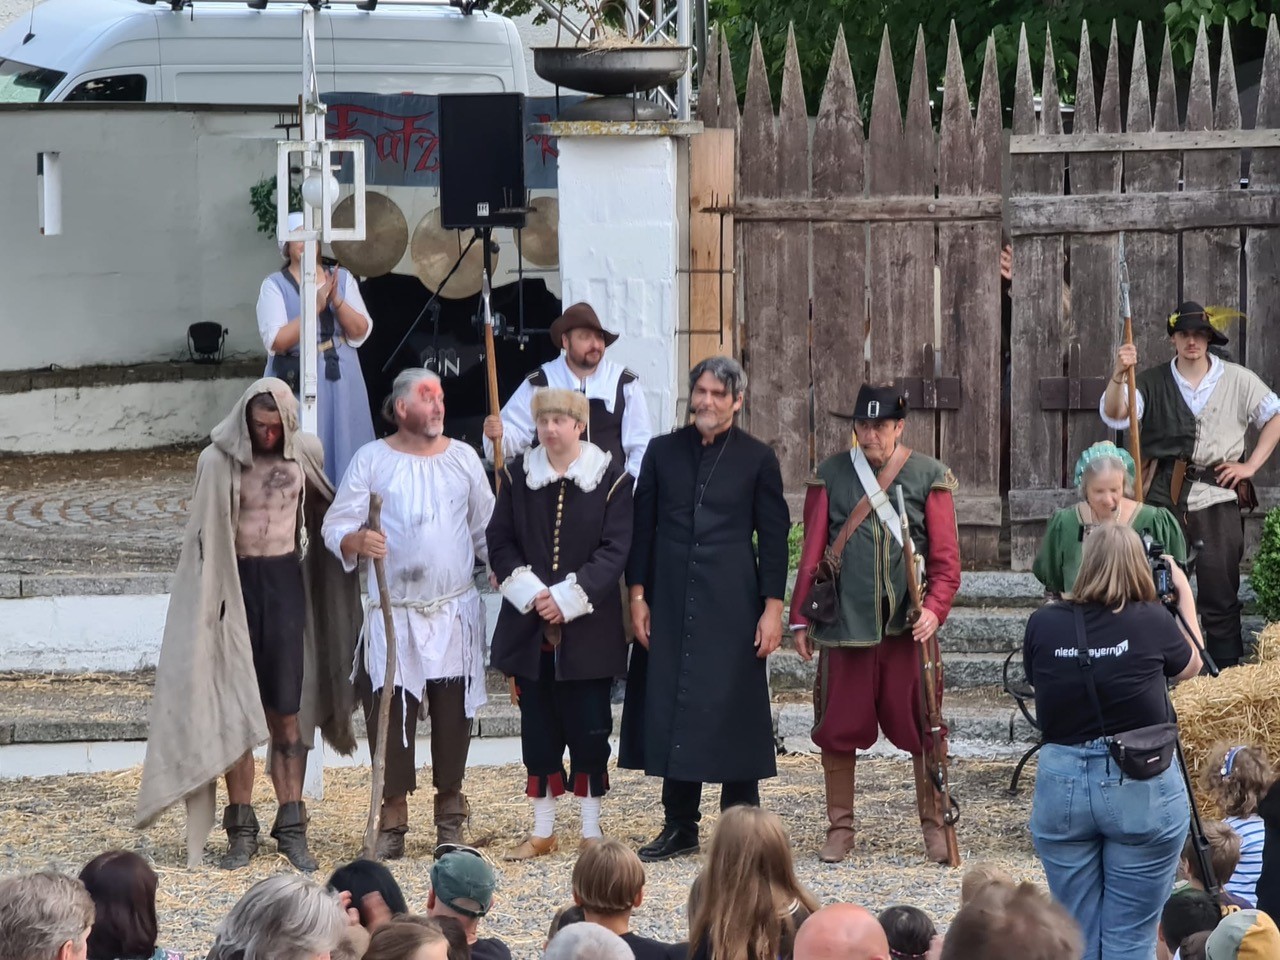 Mittelalter rockt Energiegeladener Auftritt von Totus Gaudeo – Schlossfest sehr gut besucht